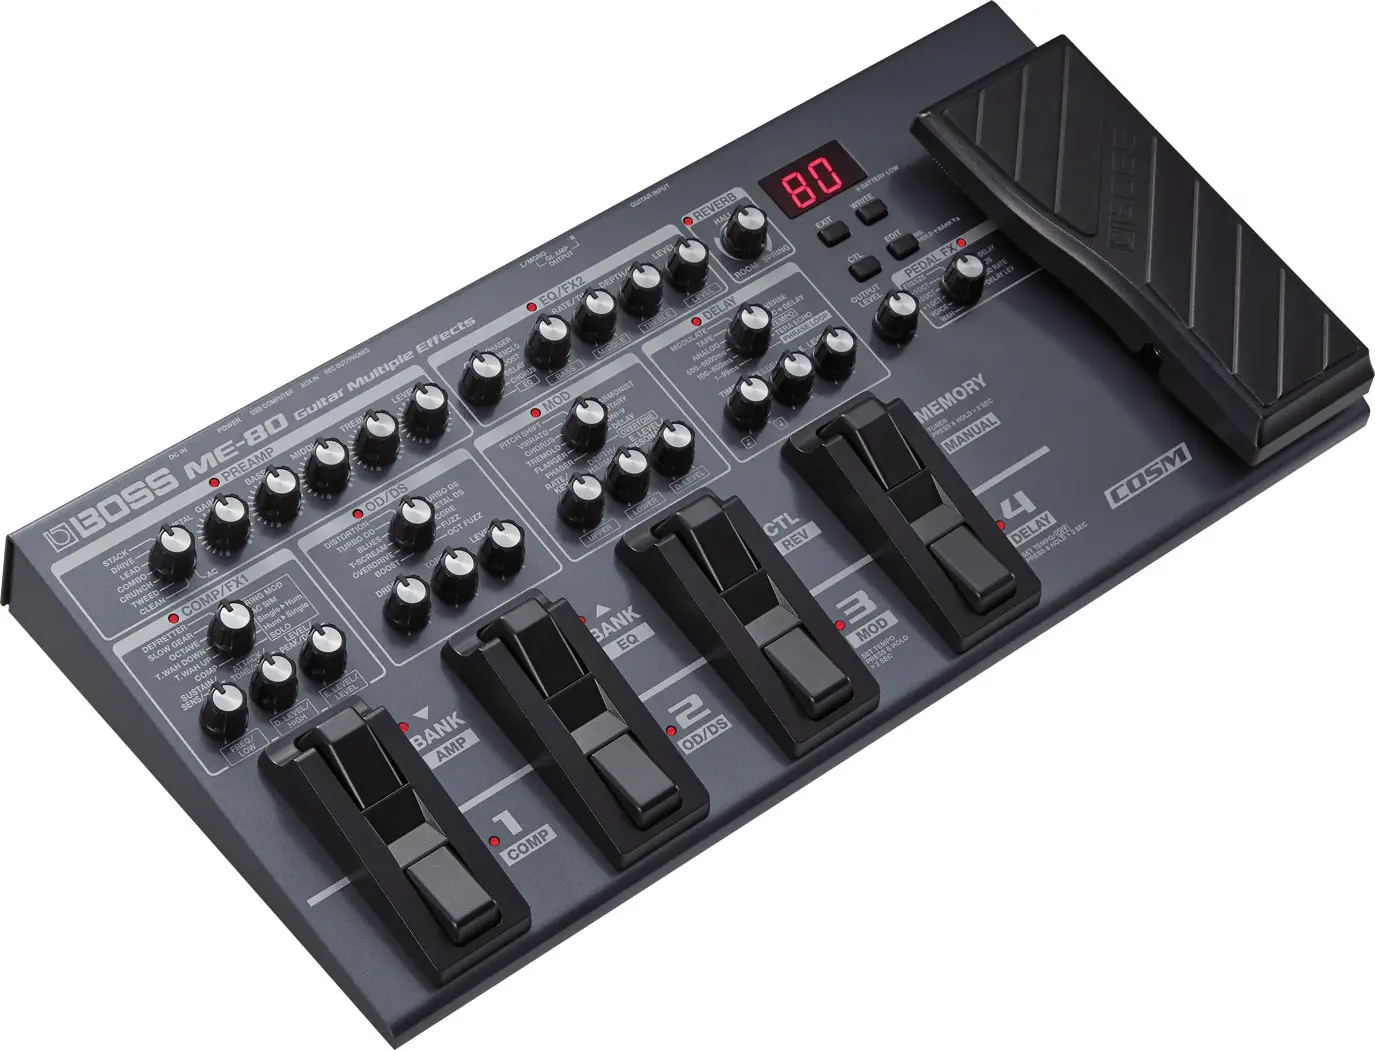 Roland ME-80 multi effect unit